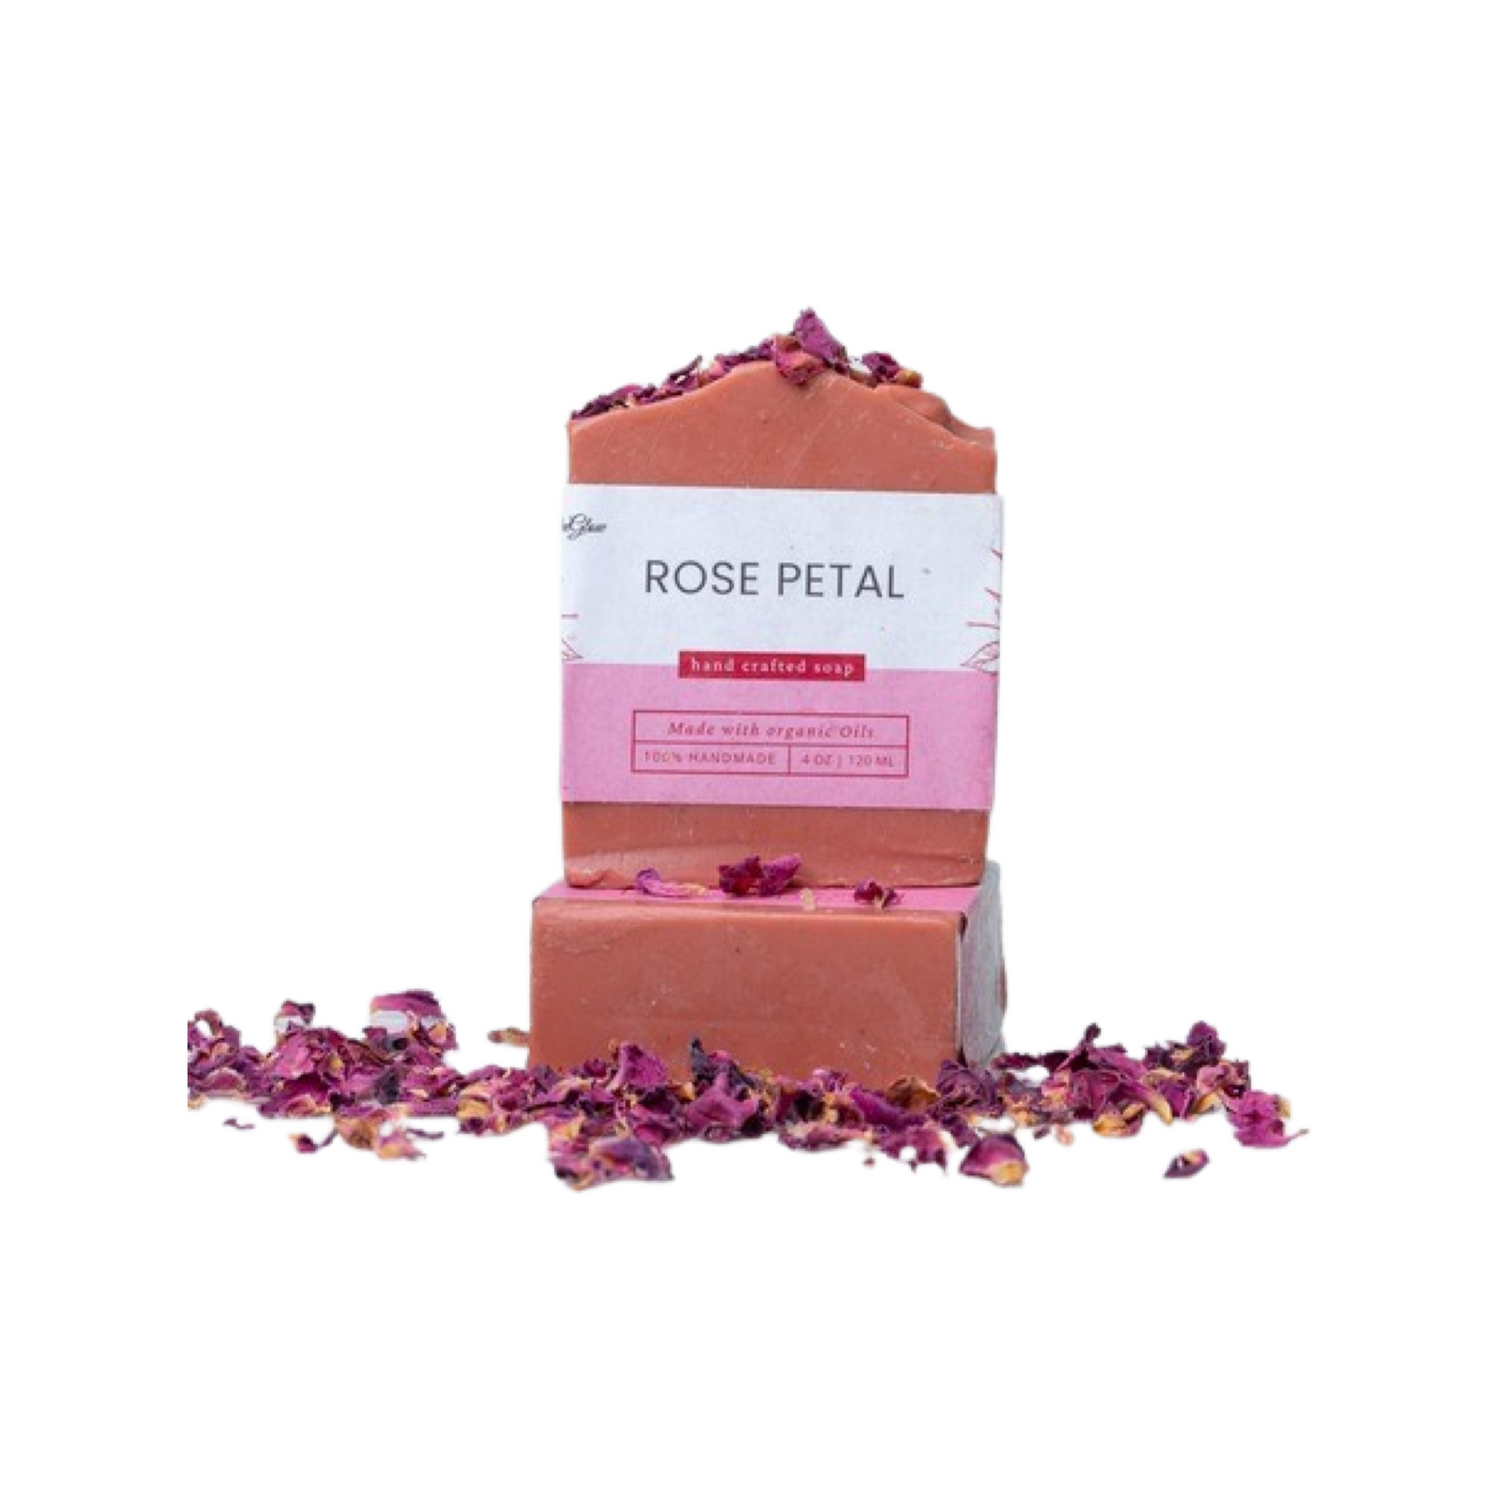 Rose petal soap - Laaleeglow 